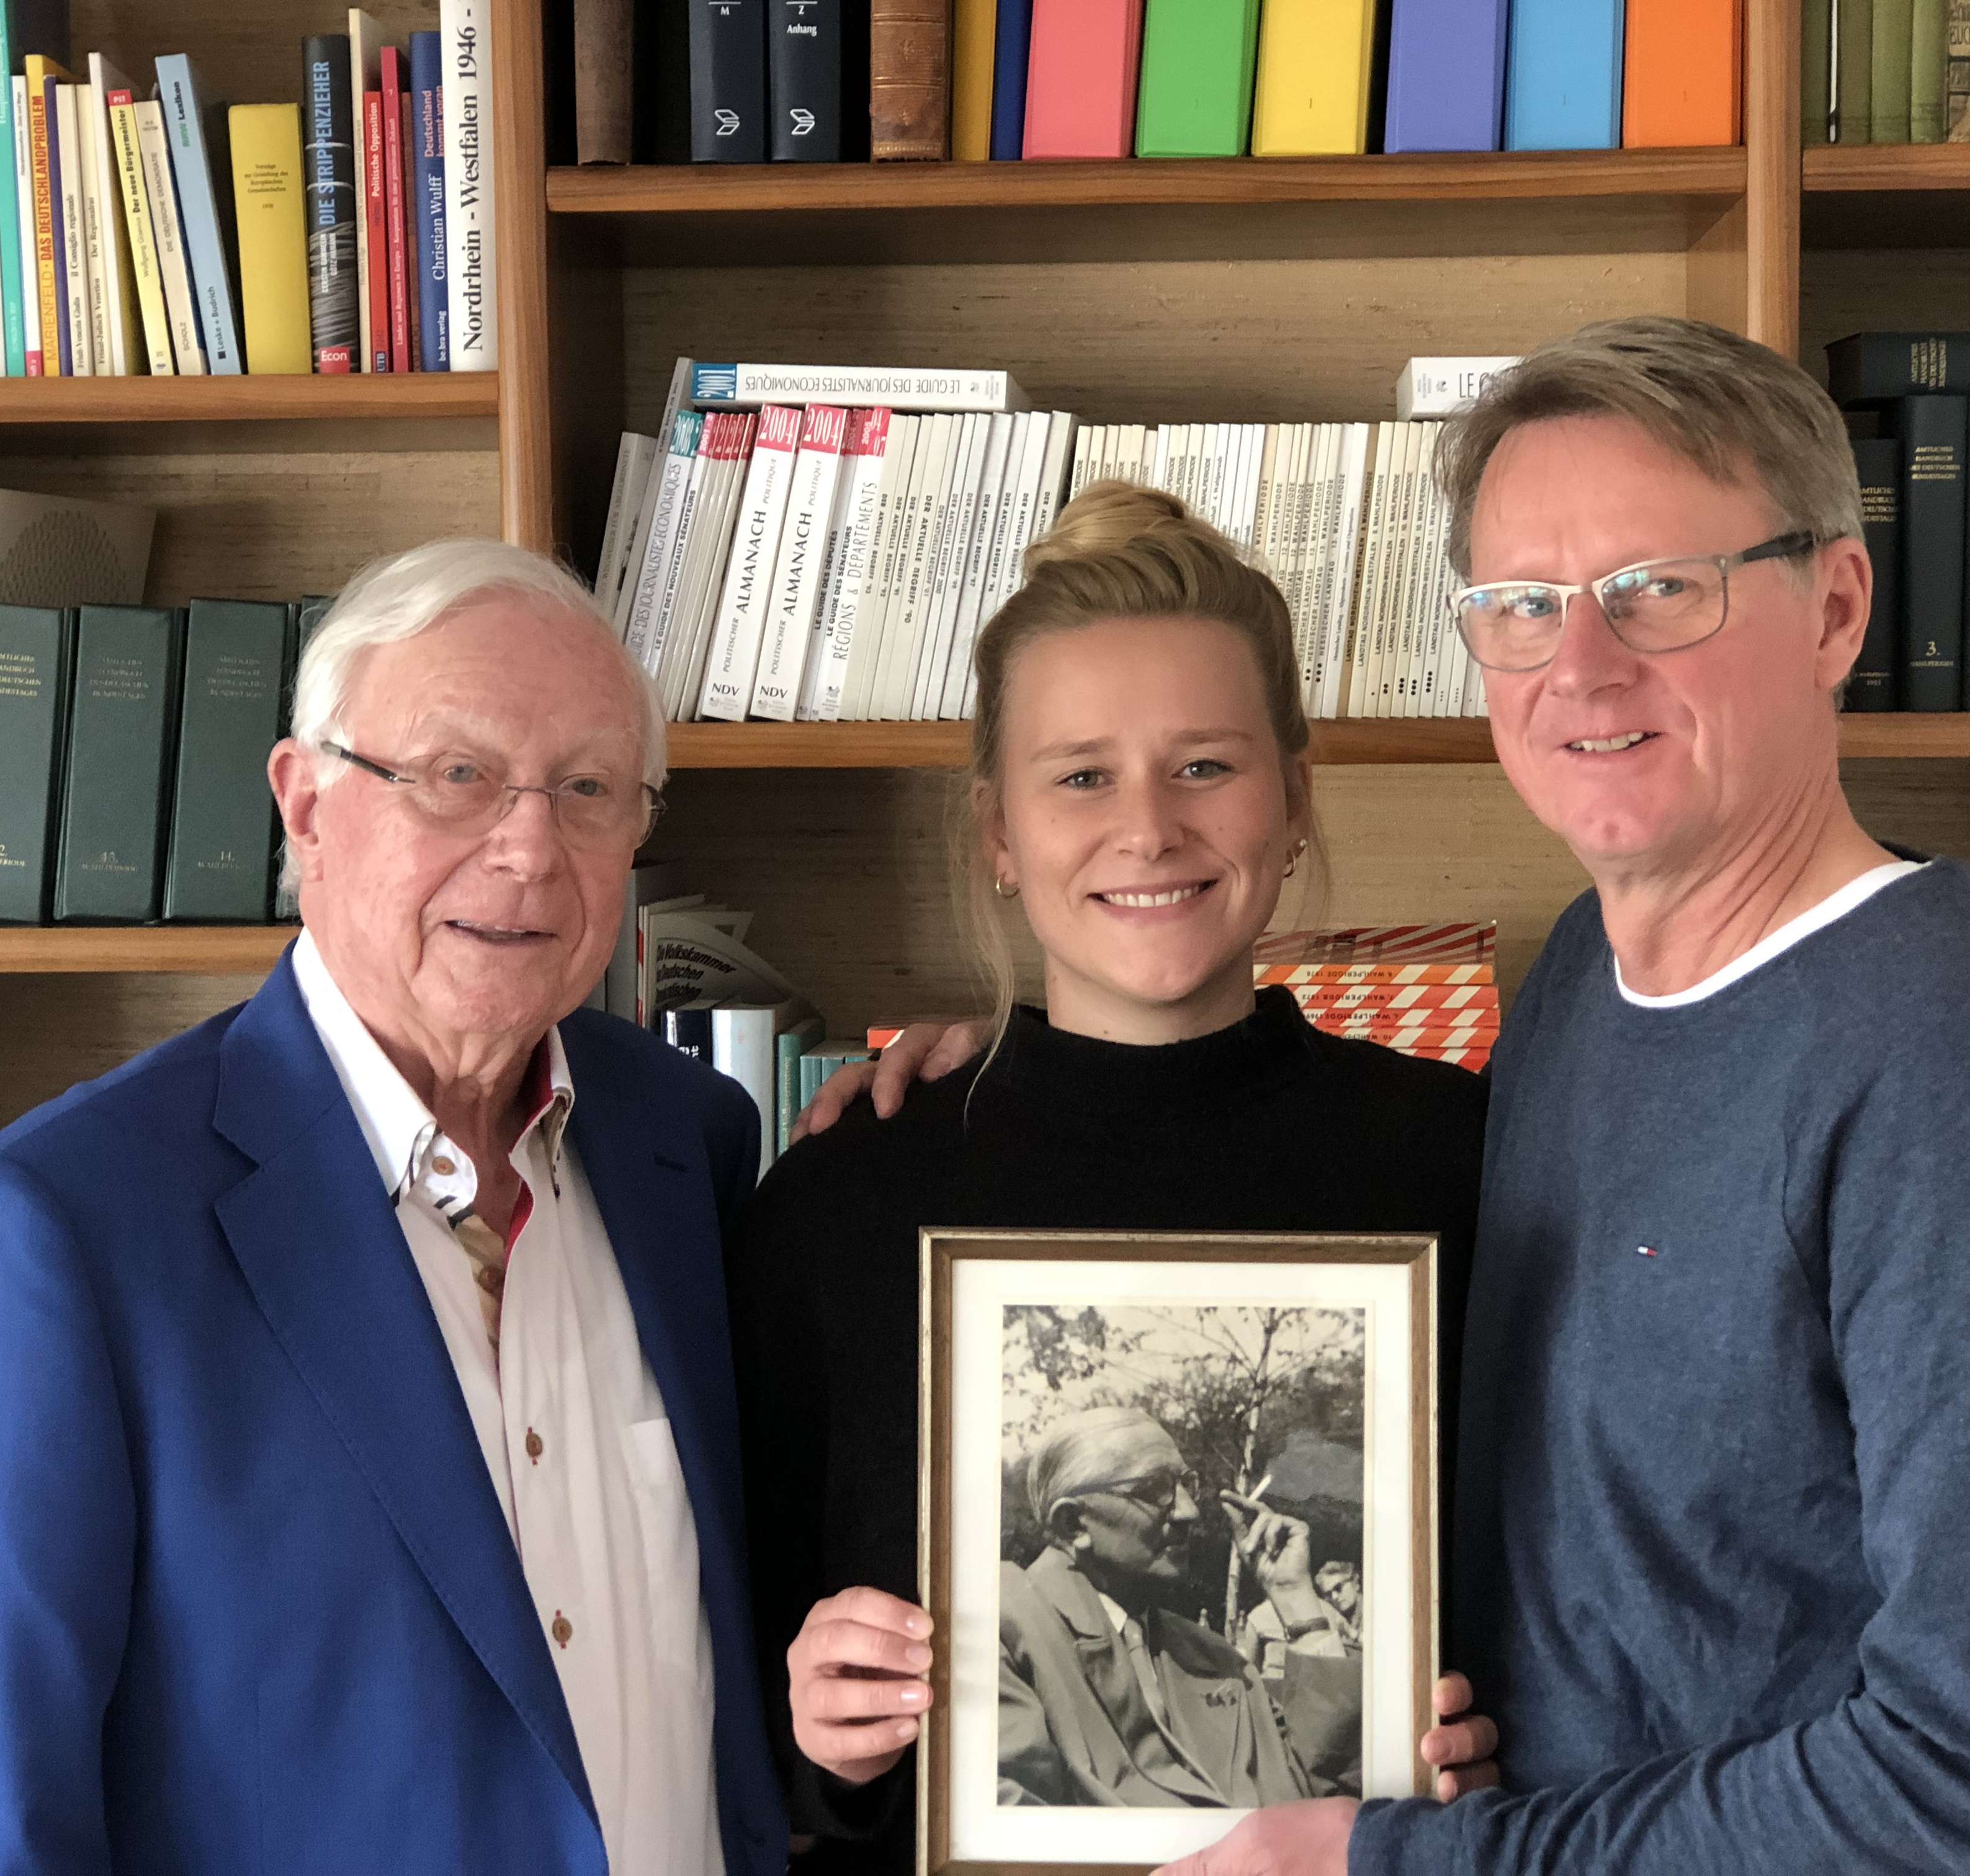 Im Bild vor einer Bücherwand: Klaus-J. Holzapfel, Katrin Holzapfel und Andreas Holzapfel, die gemeinsam ein Foto von Adolf Holzapfel in den Händen halten.